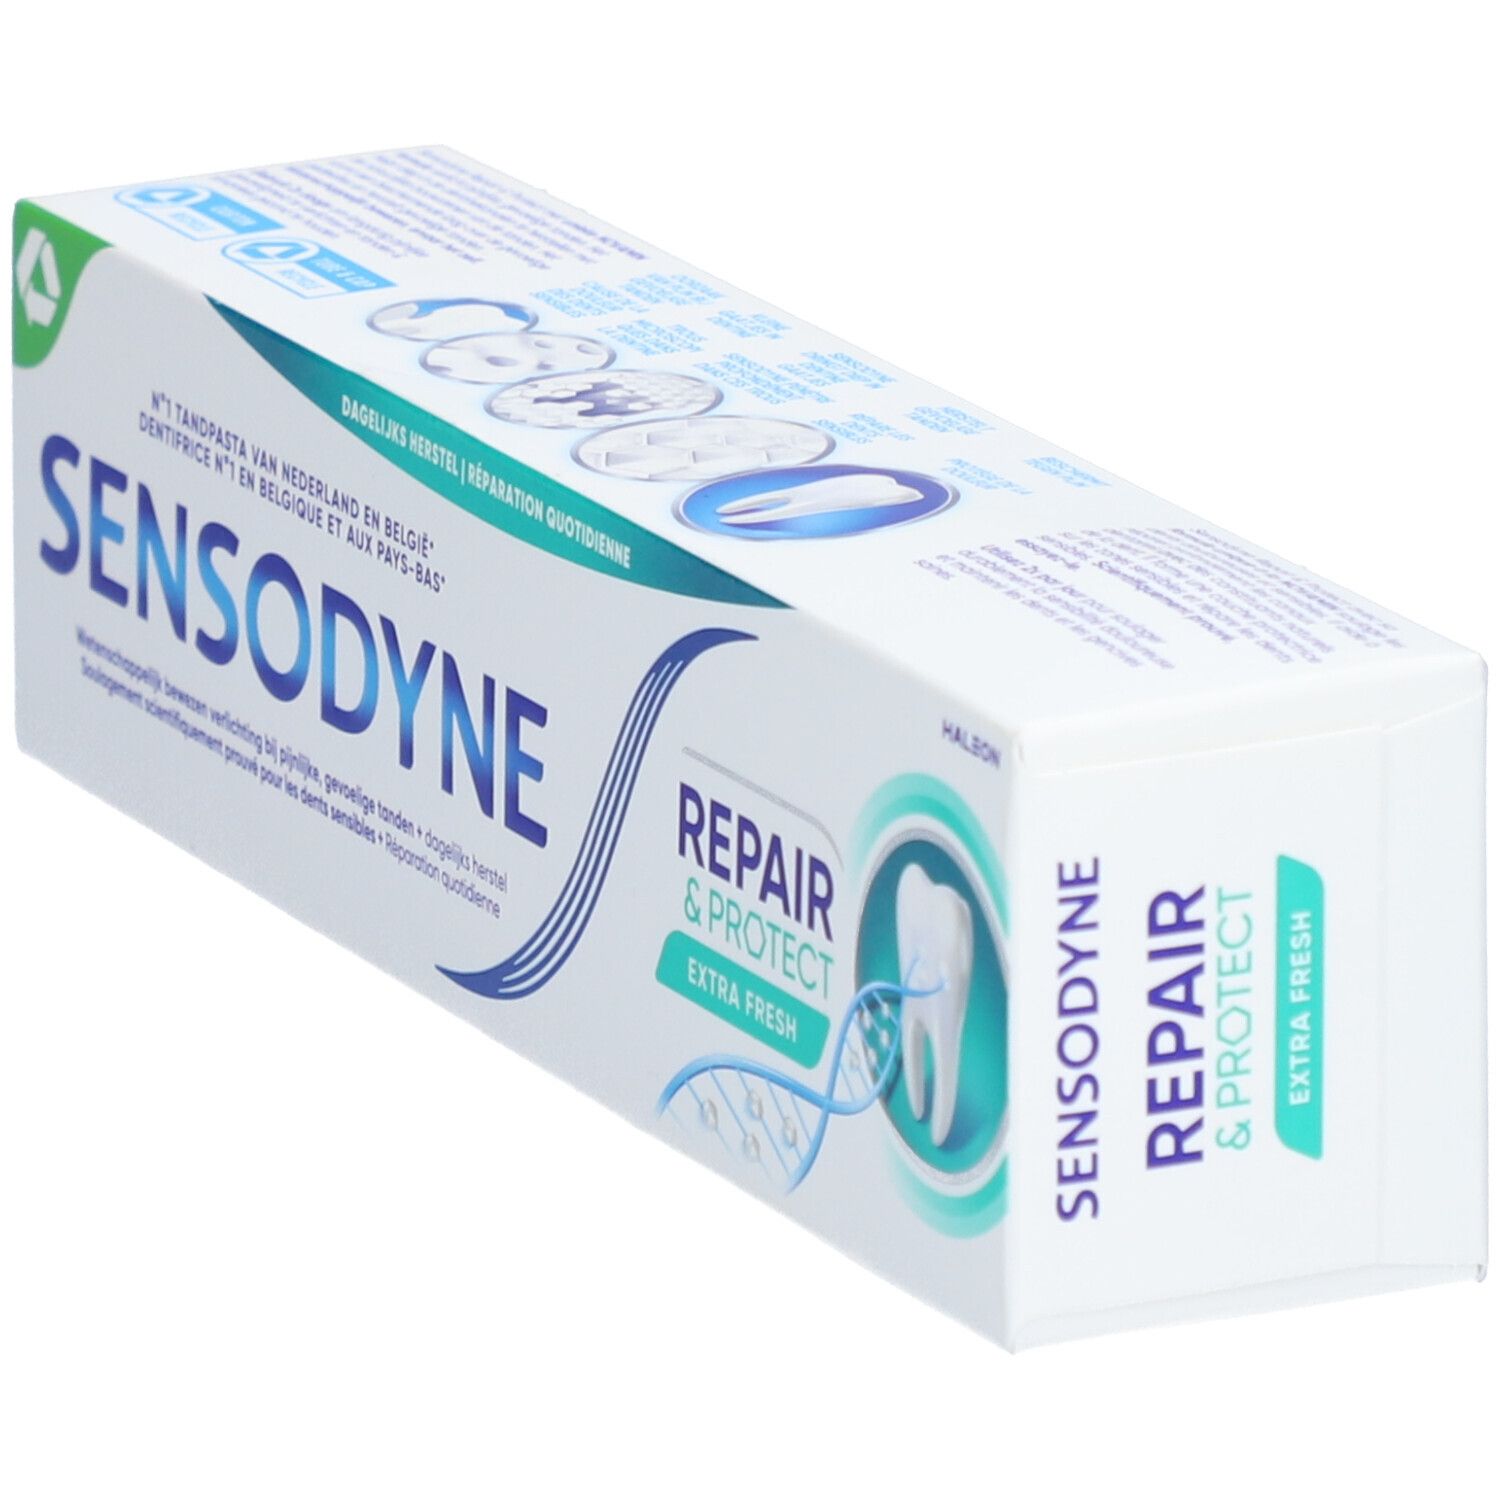 Sensodyne® Dentifrice Repair & Protect Deep Repair